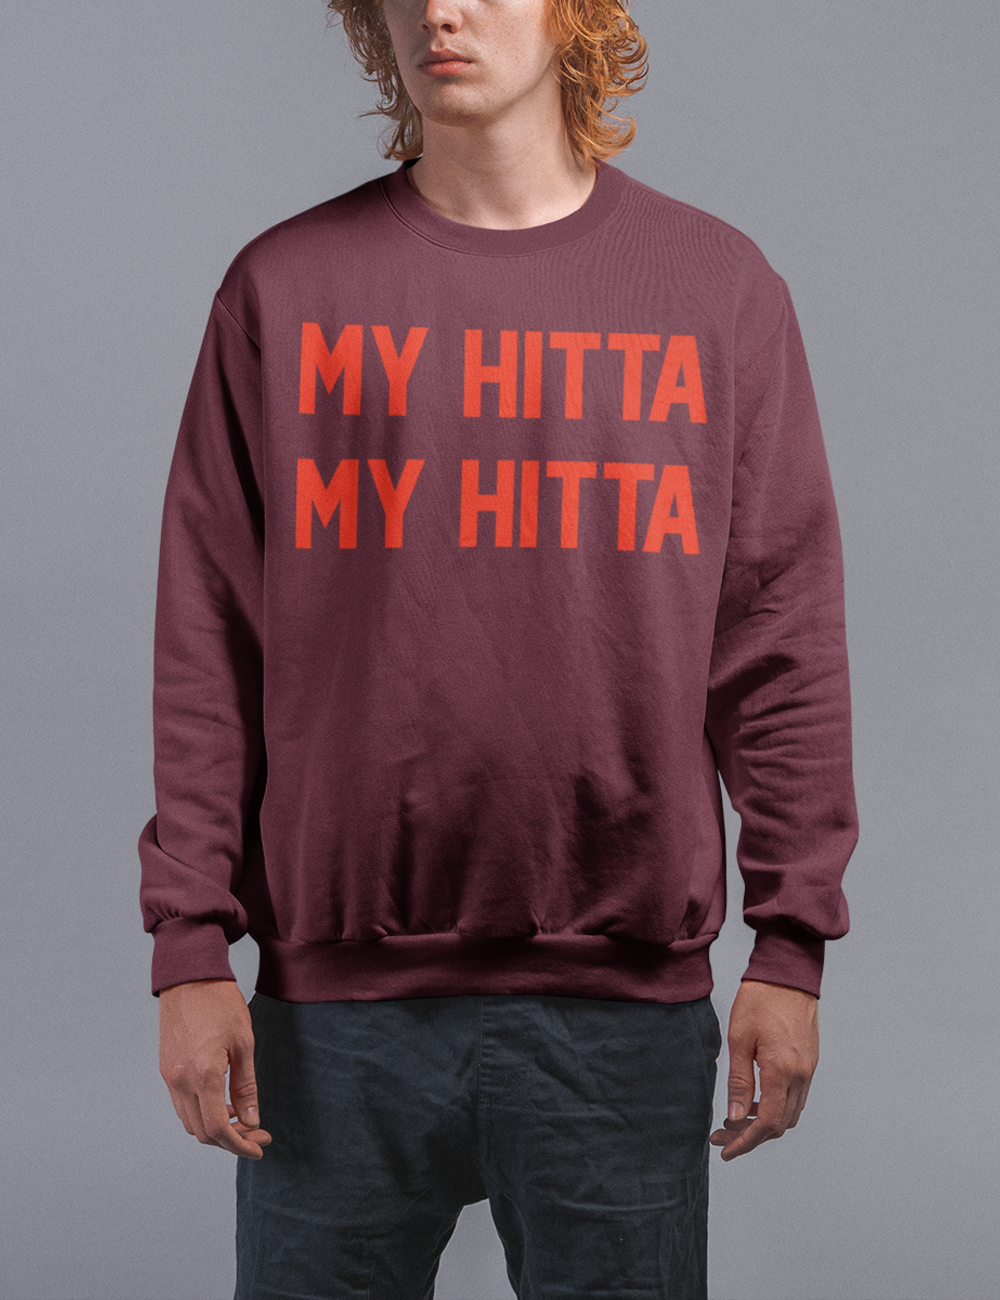 My Hitta My Hitta | Crewneck Sweatshirt OniTakai